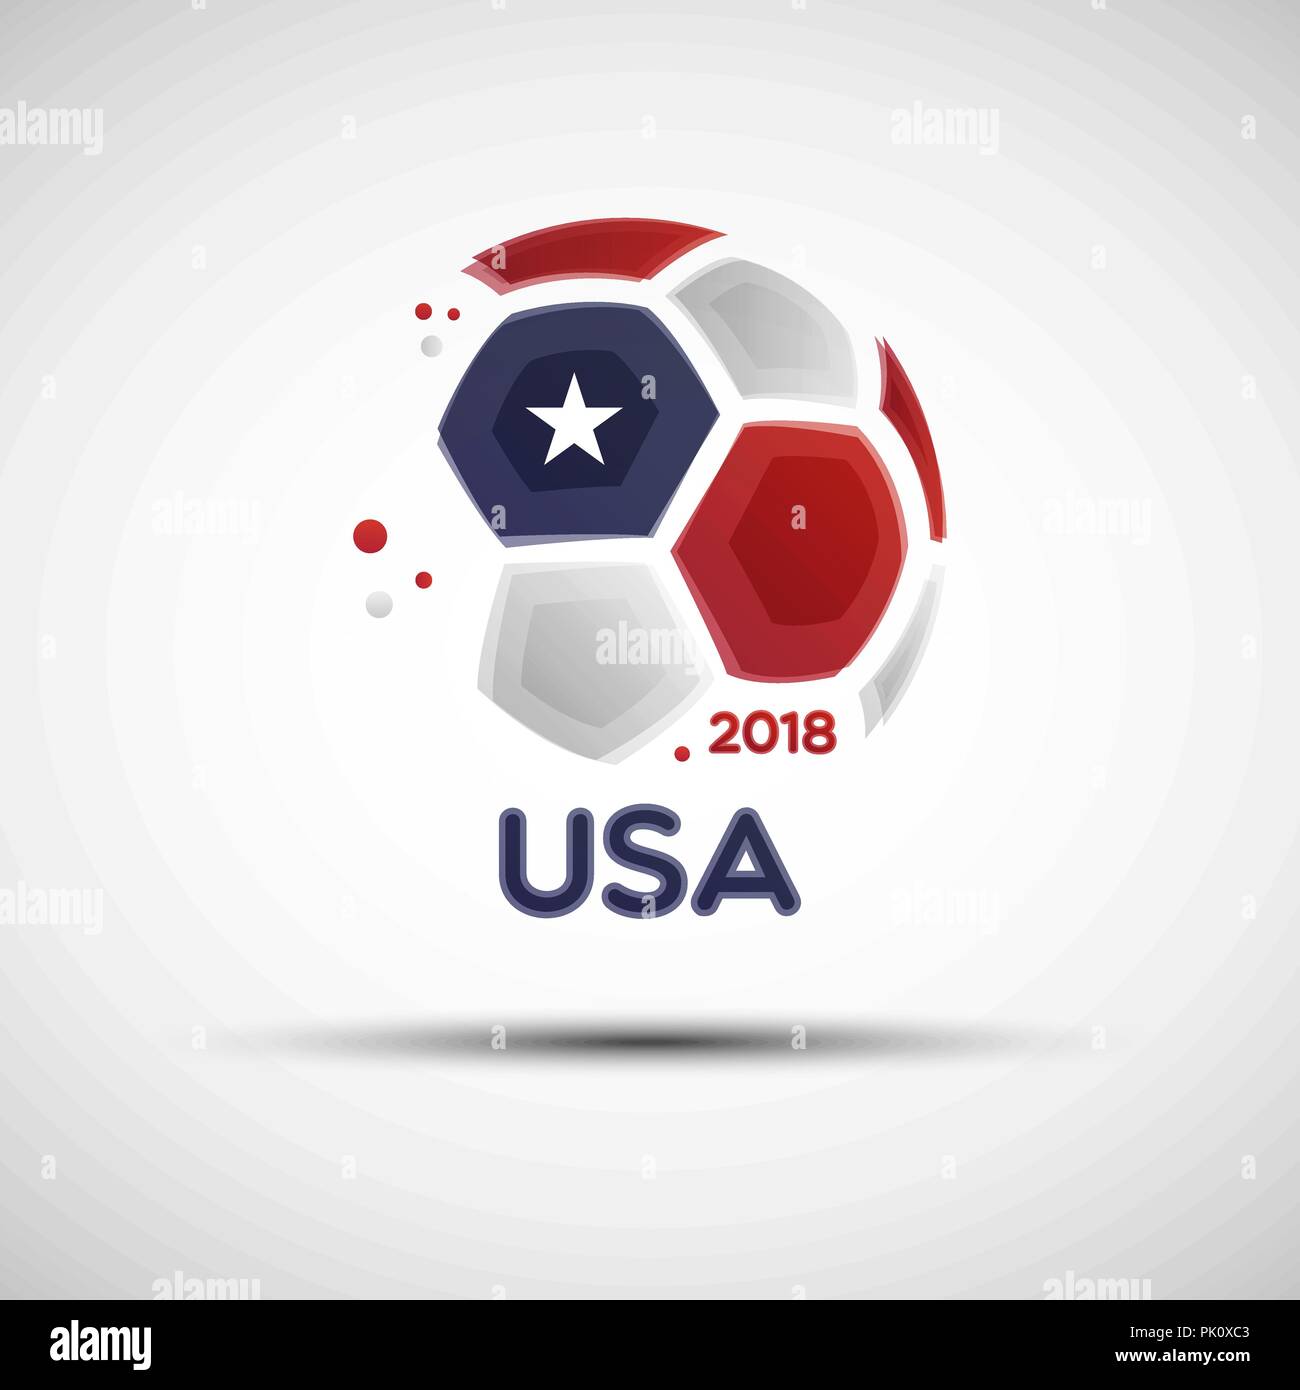 El campeonato de fútbol de banner. La bandera de EE.UU.. Ilustración vectorial de la abstracción de un balón de fútbol con Estados Unidos de América los colores de la bandera nacional Ilustración del Vector